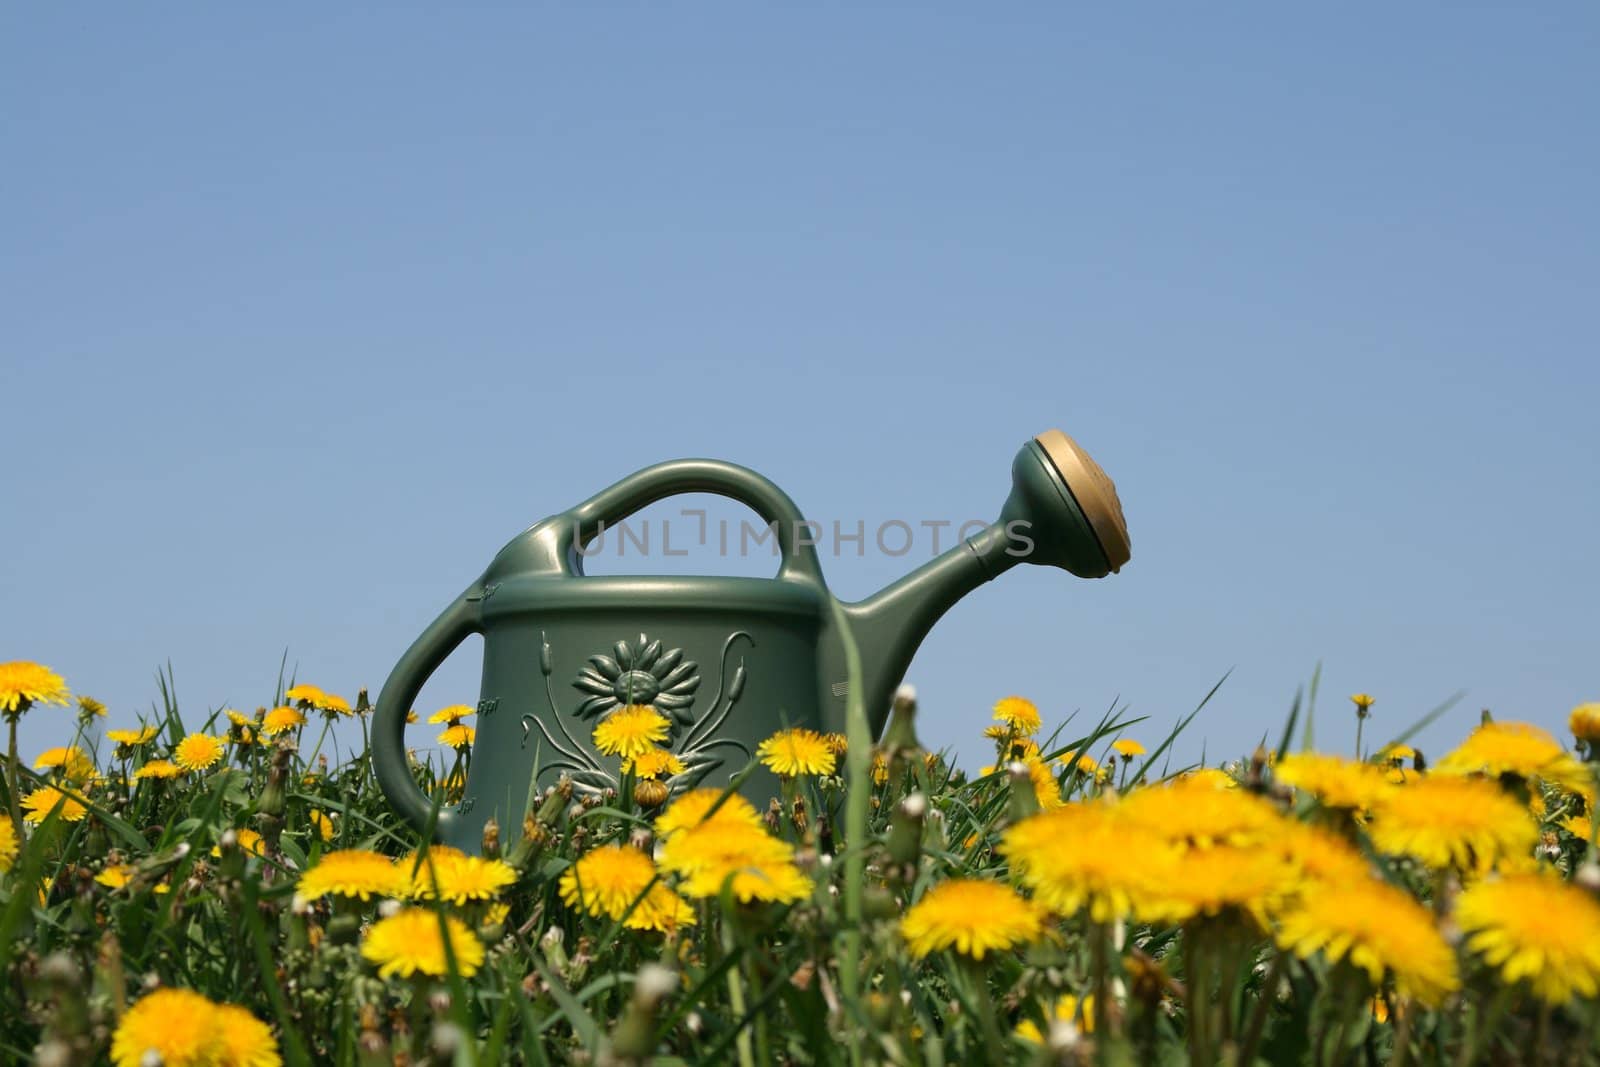 Green watering-can in a flowering dandelion field.